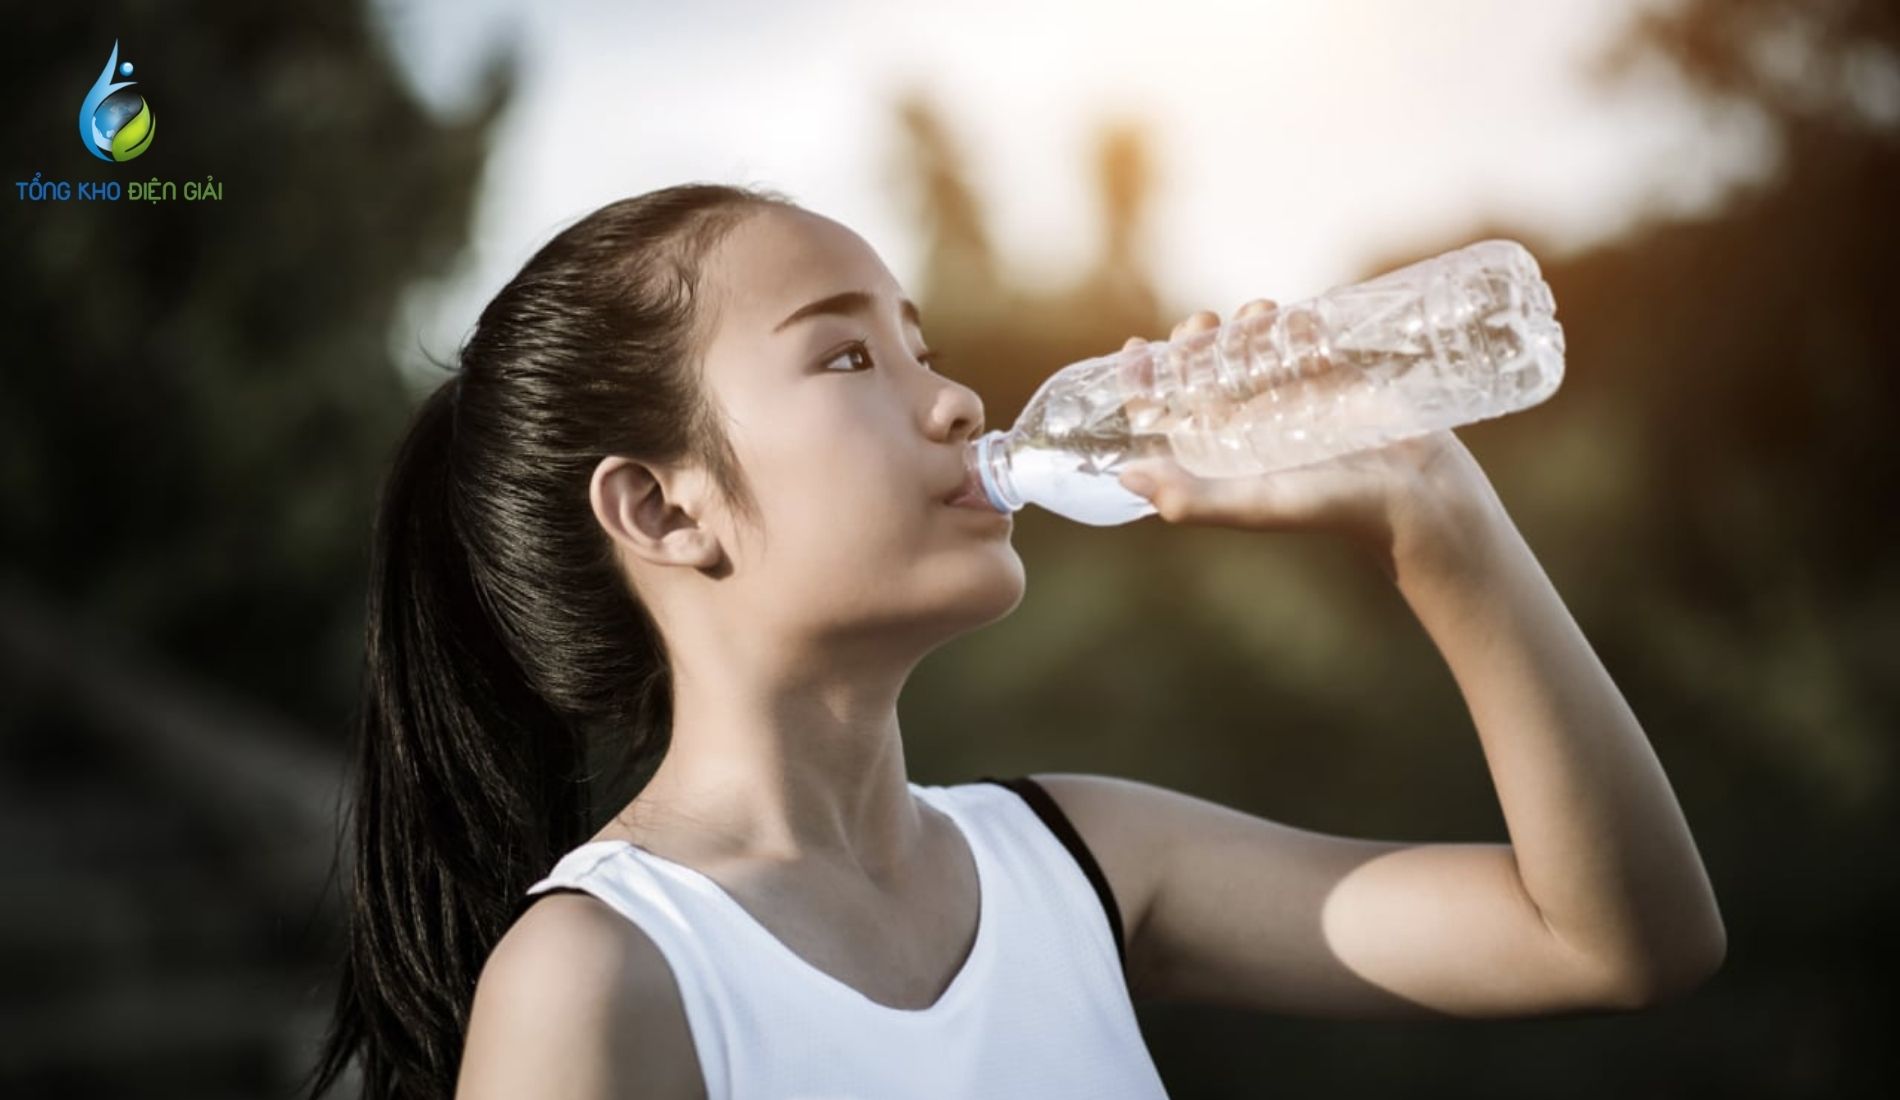 Theo EPA (Cơ quan Bảo vệ Môi trường Hoa Kỳ), độ pH thích hợp và an toàn của nước uống là từ 6,5 đến 8,5. Phạm vi này tương ứng với nước kiềm.